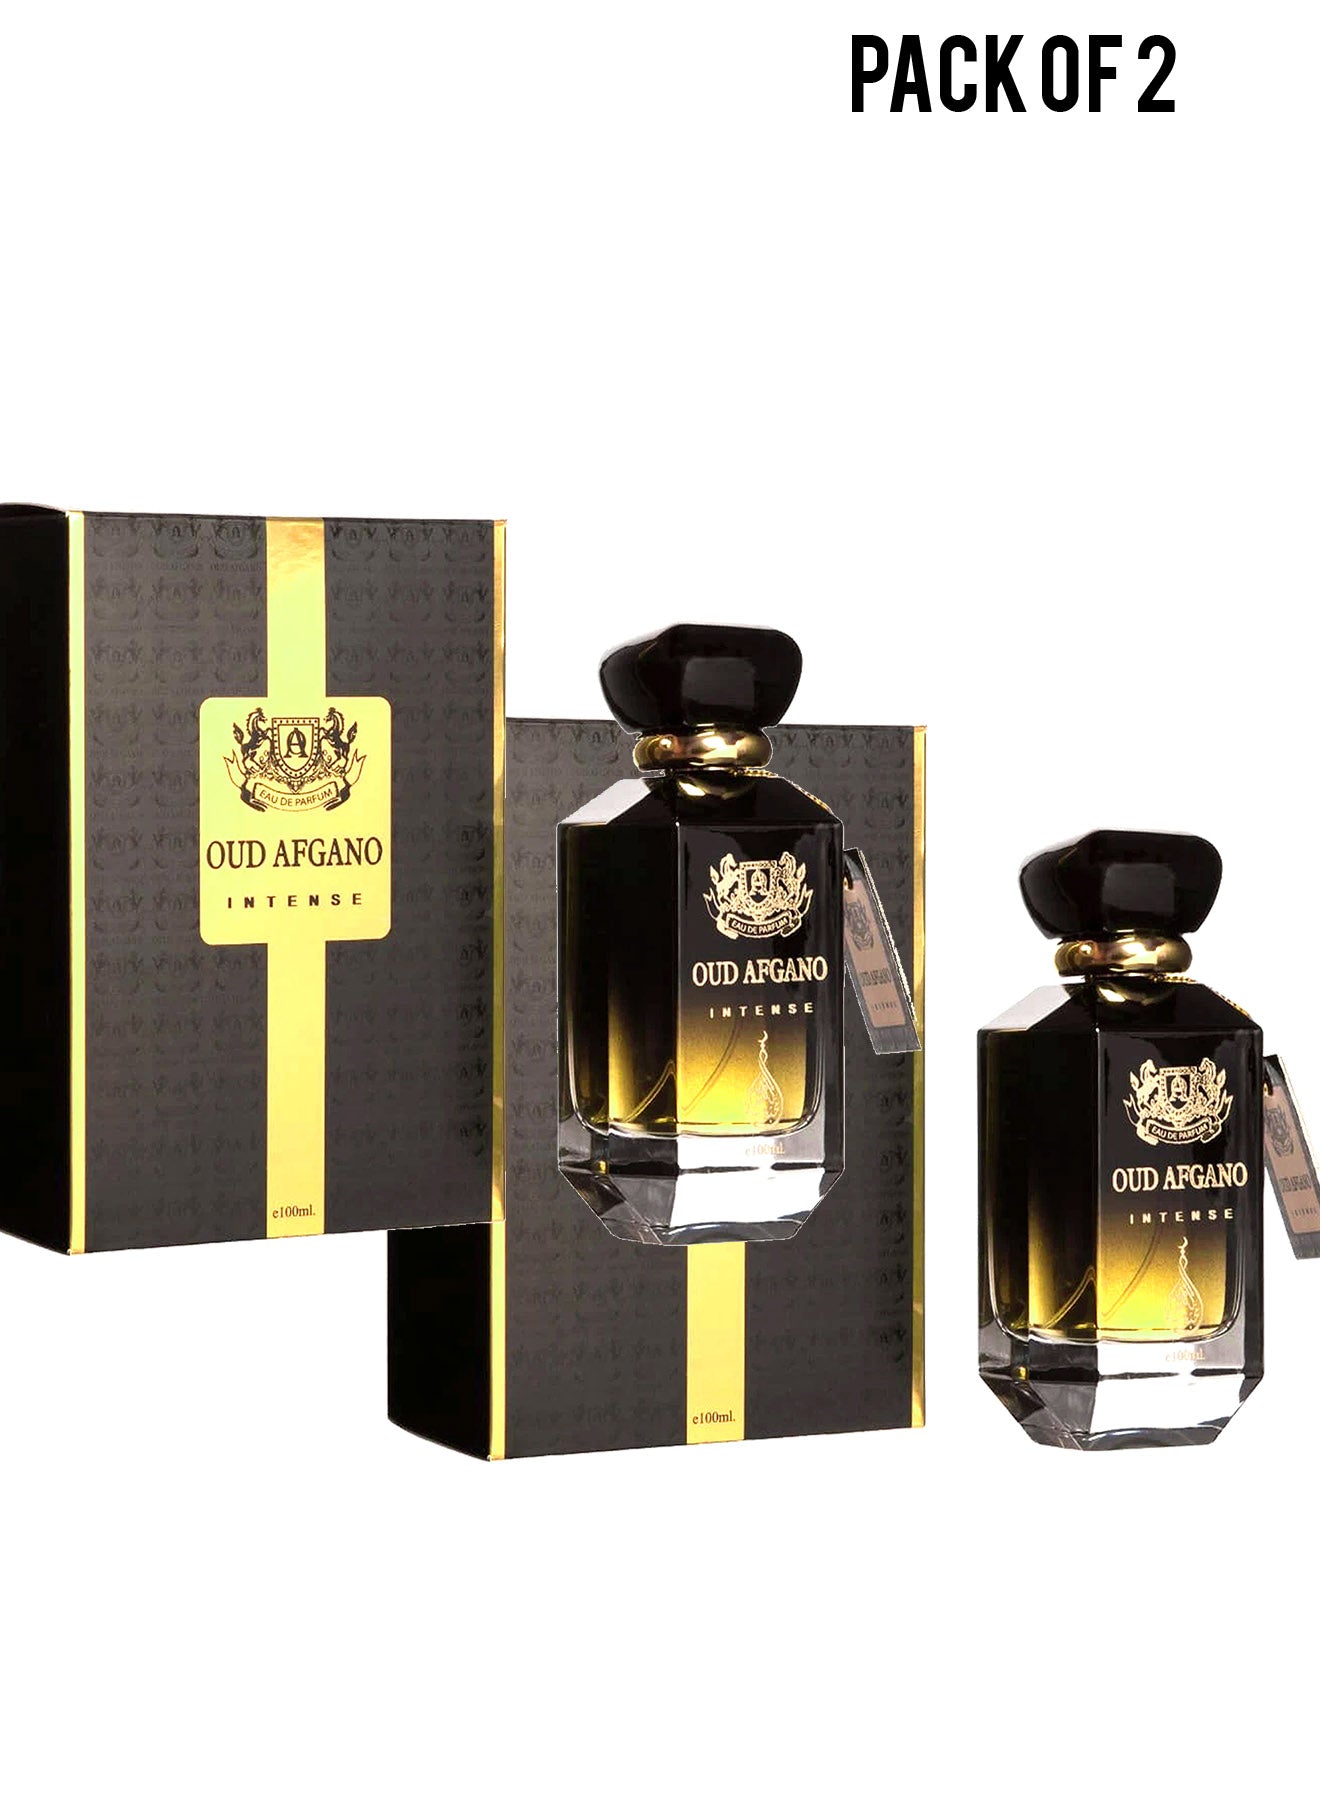 Oud Afgano Intense Eau De Parfum 100ml Value Pack of 2 